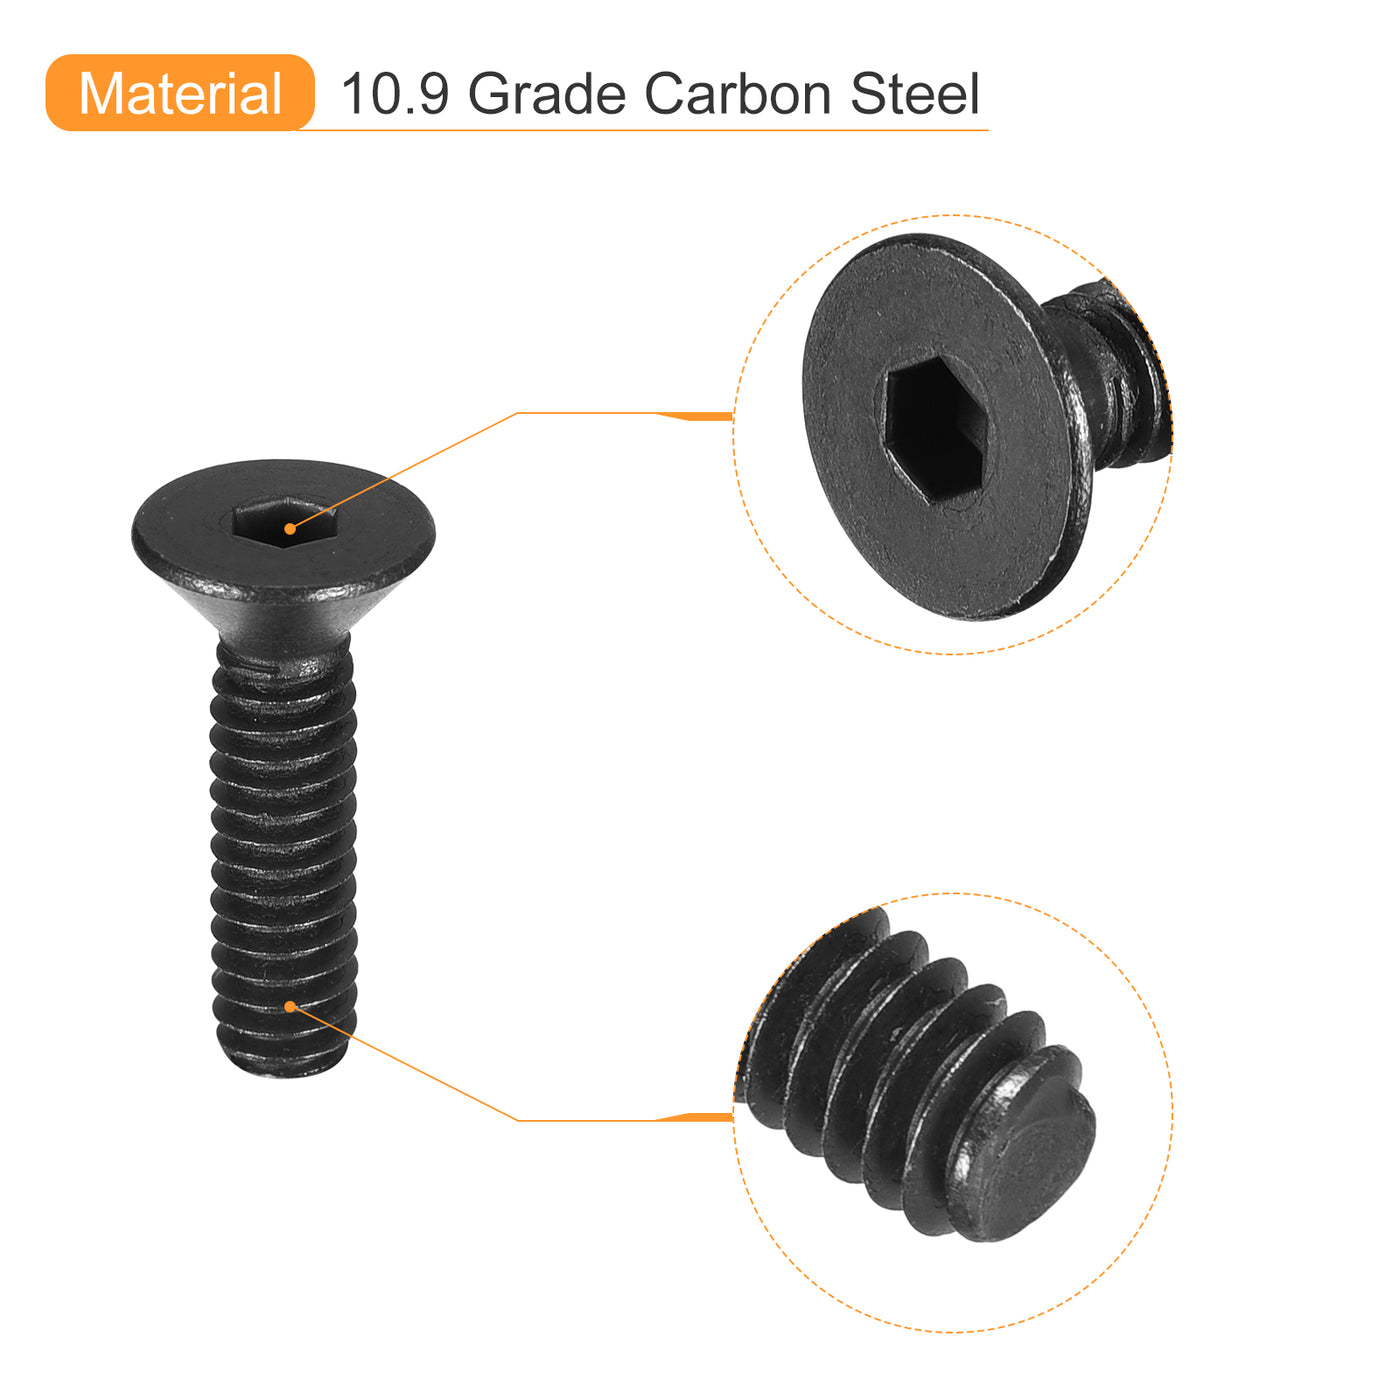 uxcell Uxcell #6-32x5/8" Flat Head Socket Cap Screws, 10.9 Grade Carbon, Black, 10pcs